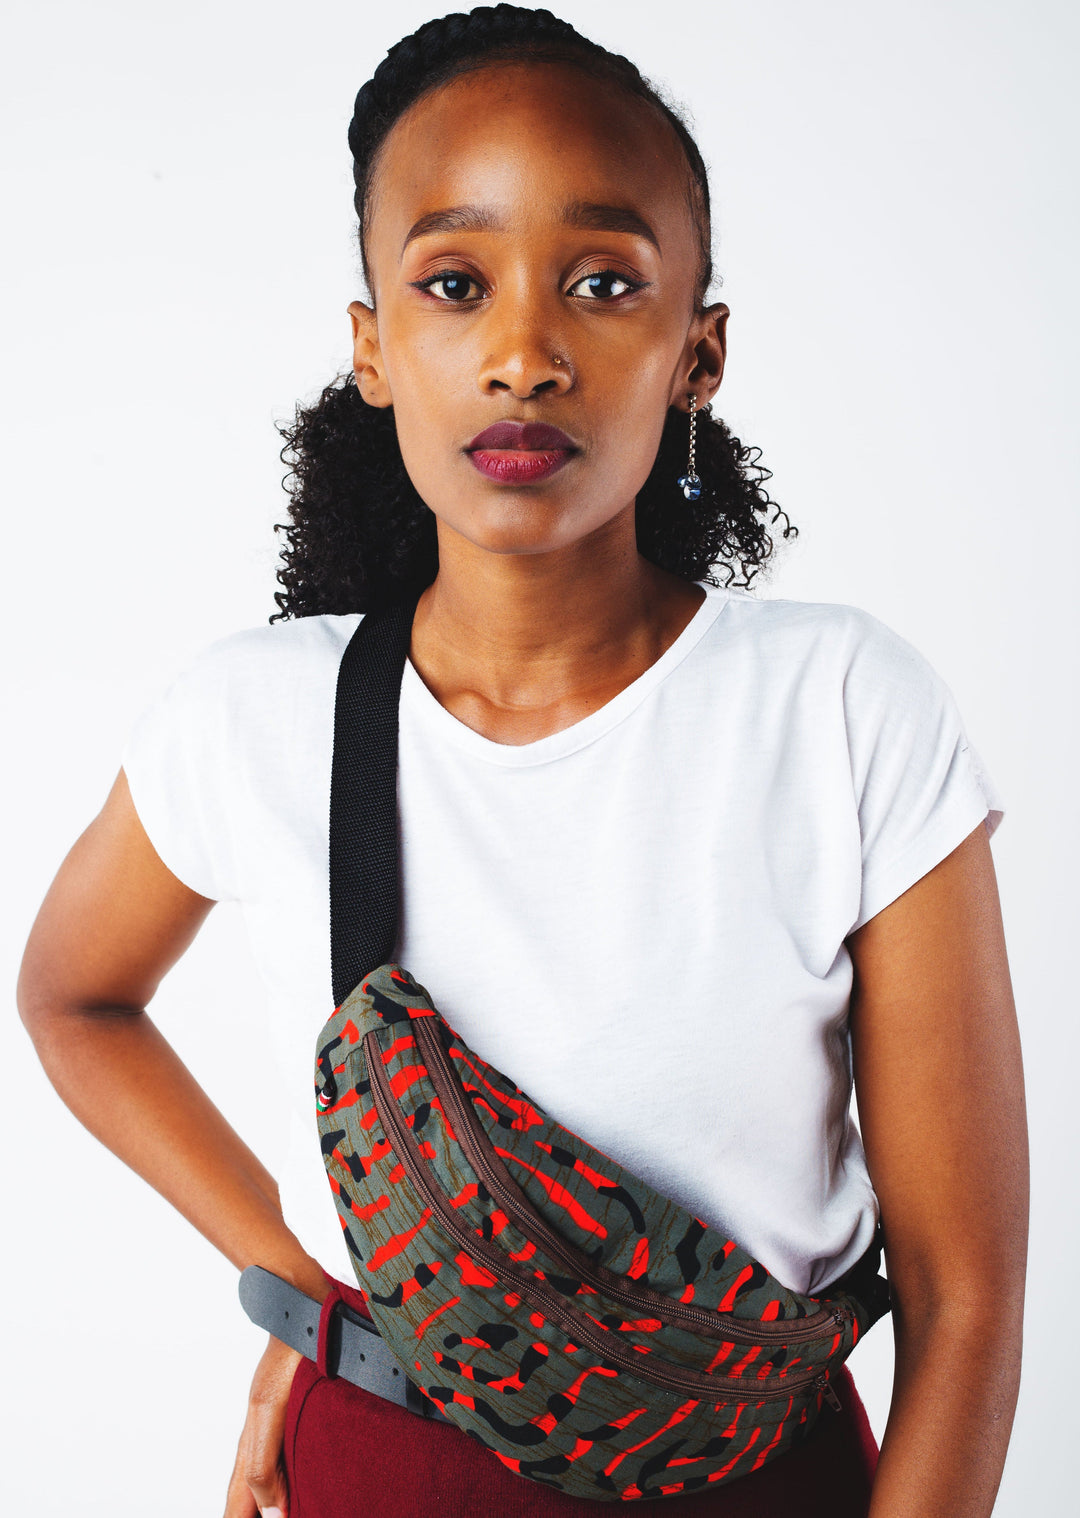 Weekender ‚Kijeshi‘ - Bunte Bauchtasche Damen, Kinder und Herren: unisex Fanny pack made in Kenya. Small and large Bumbag, Color Belt bag, Colorful hip bag, Fanny Bag, Vegan